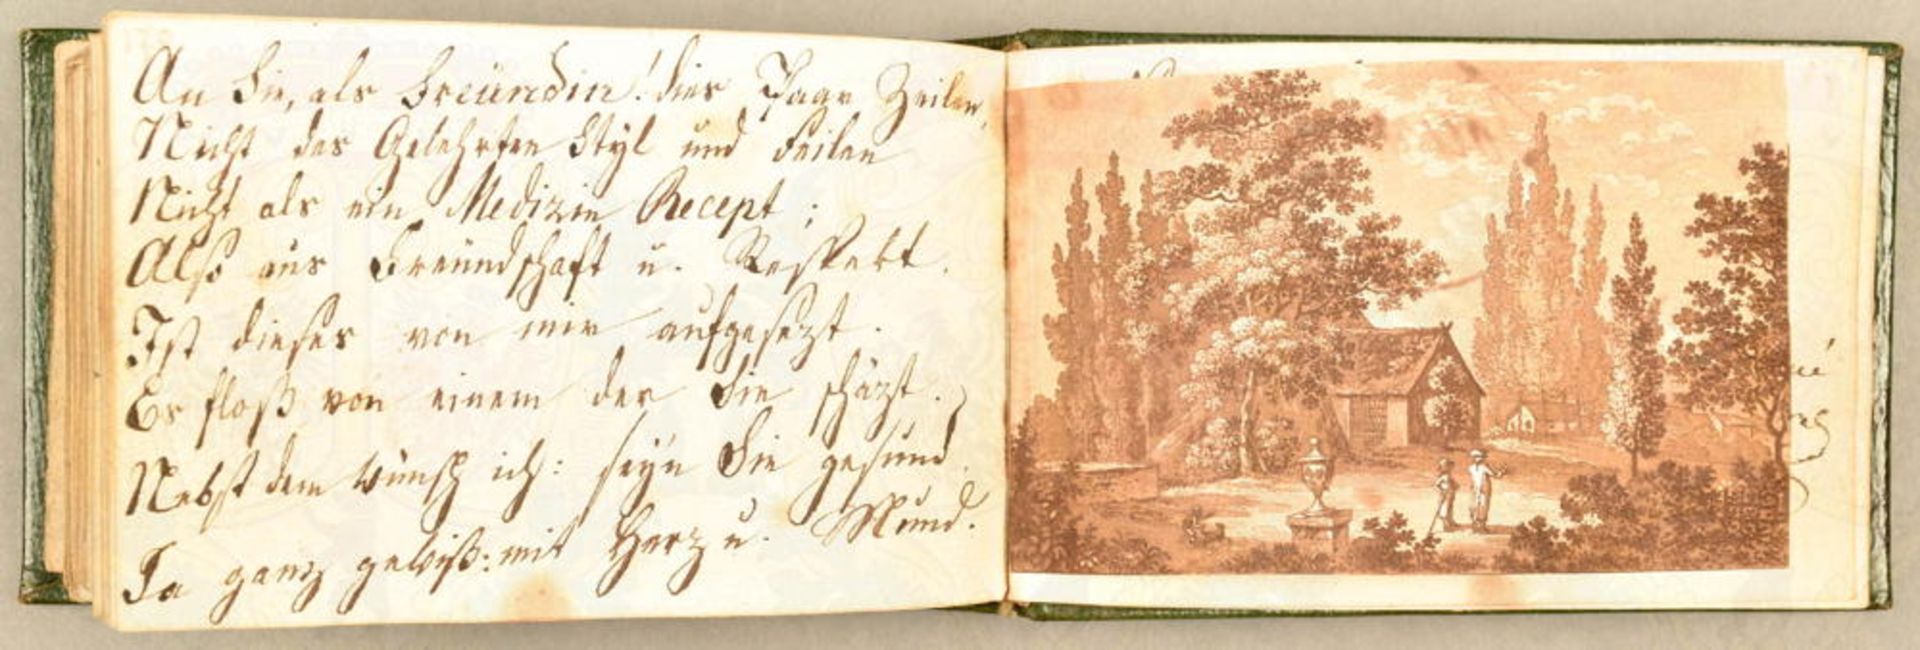 Poesie-Album einer Dame 1813-1844 - Bild 4 aus 4